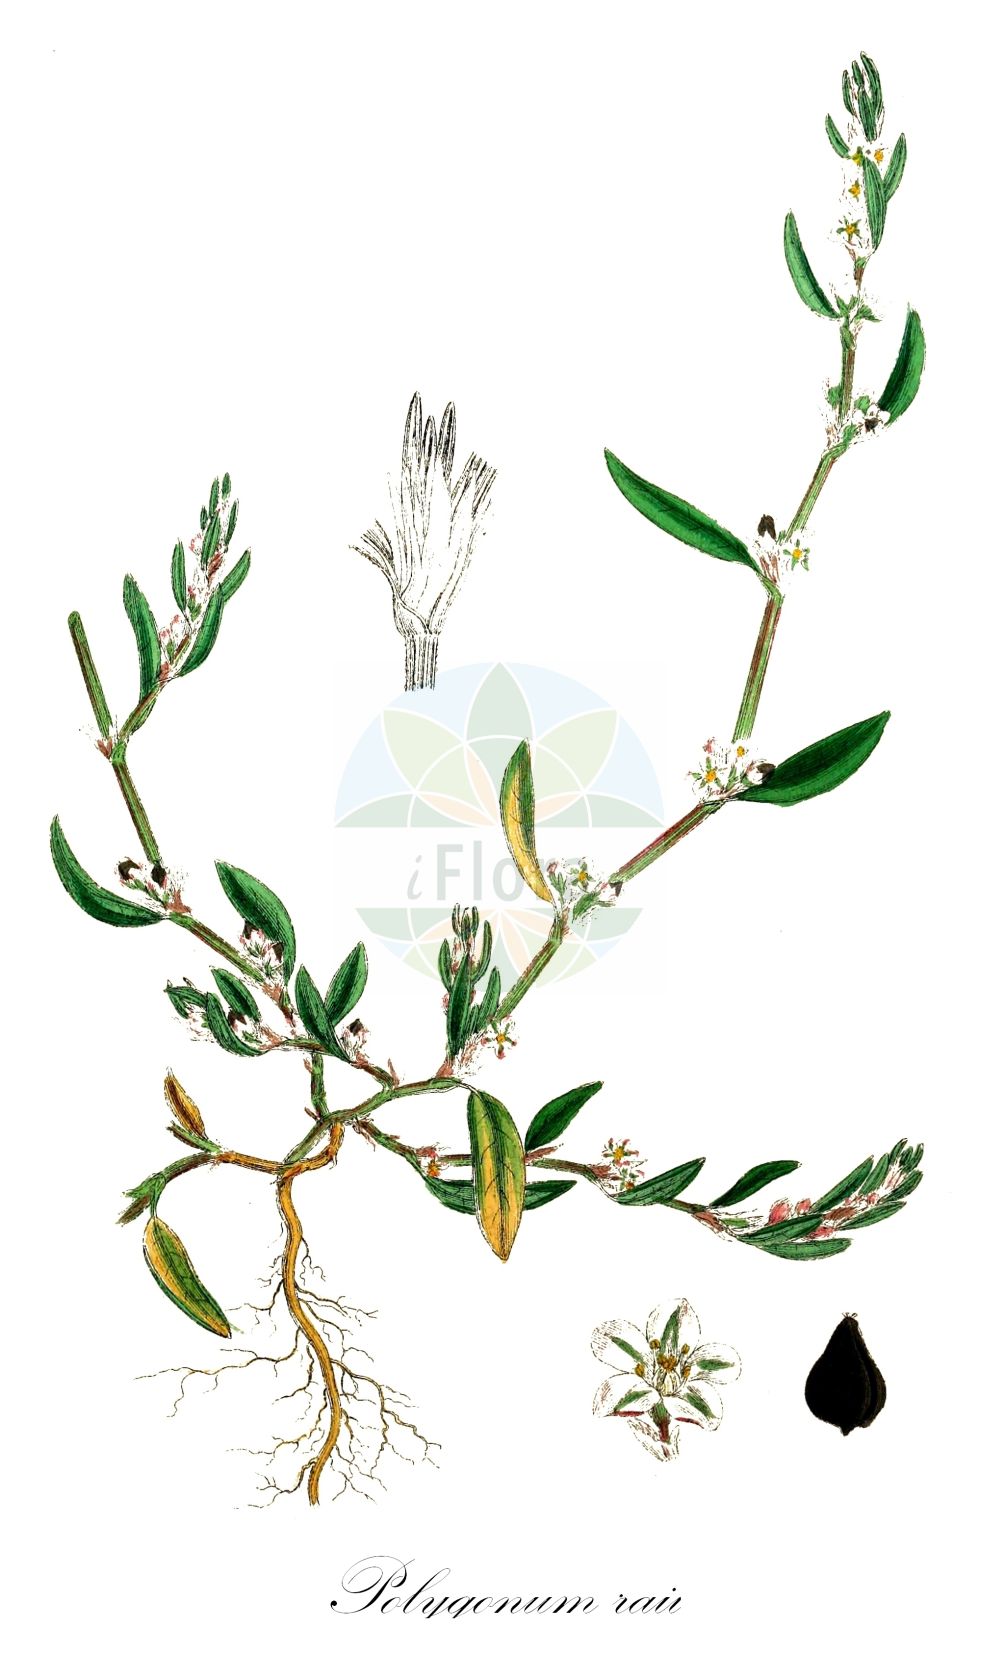 Historische Abbildung von Polygonum raii (Rays Knöterich - Ray's Knotgrass). Das Bild zeigt Blatt, Bluete, Frucht und Same. ---- Historical Drawing of Polygonum raii (Rays Knöterich - Ray's Knotgrass). The image is showing leaf, flower, fruit and seed.(Polygonum raii,Rays Knöterich,Ray's Knotgrass,Polygonum raii,Rays Knoeterich,Ray's Knotgrass,Ray's Knotweed,Polygonum,Knöterich,Knotgrass,Polygonaceae,Knöterichgewächse,Knotgrass family,Blatt,Bluete,Frucht,Same,leaf,flower,fruit,seed,Sowerby (1790-1813))